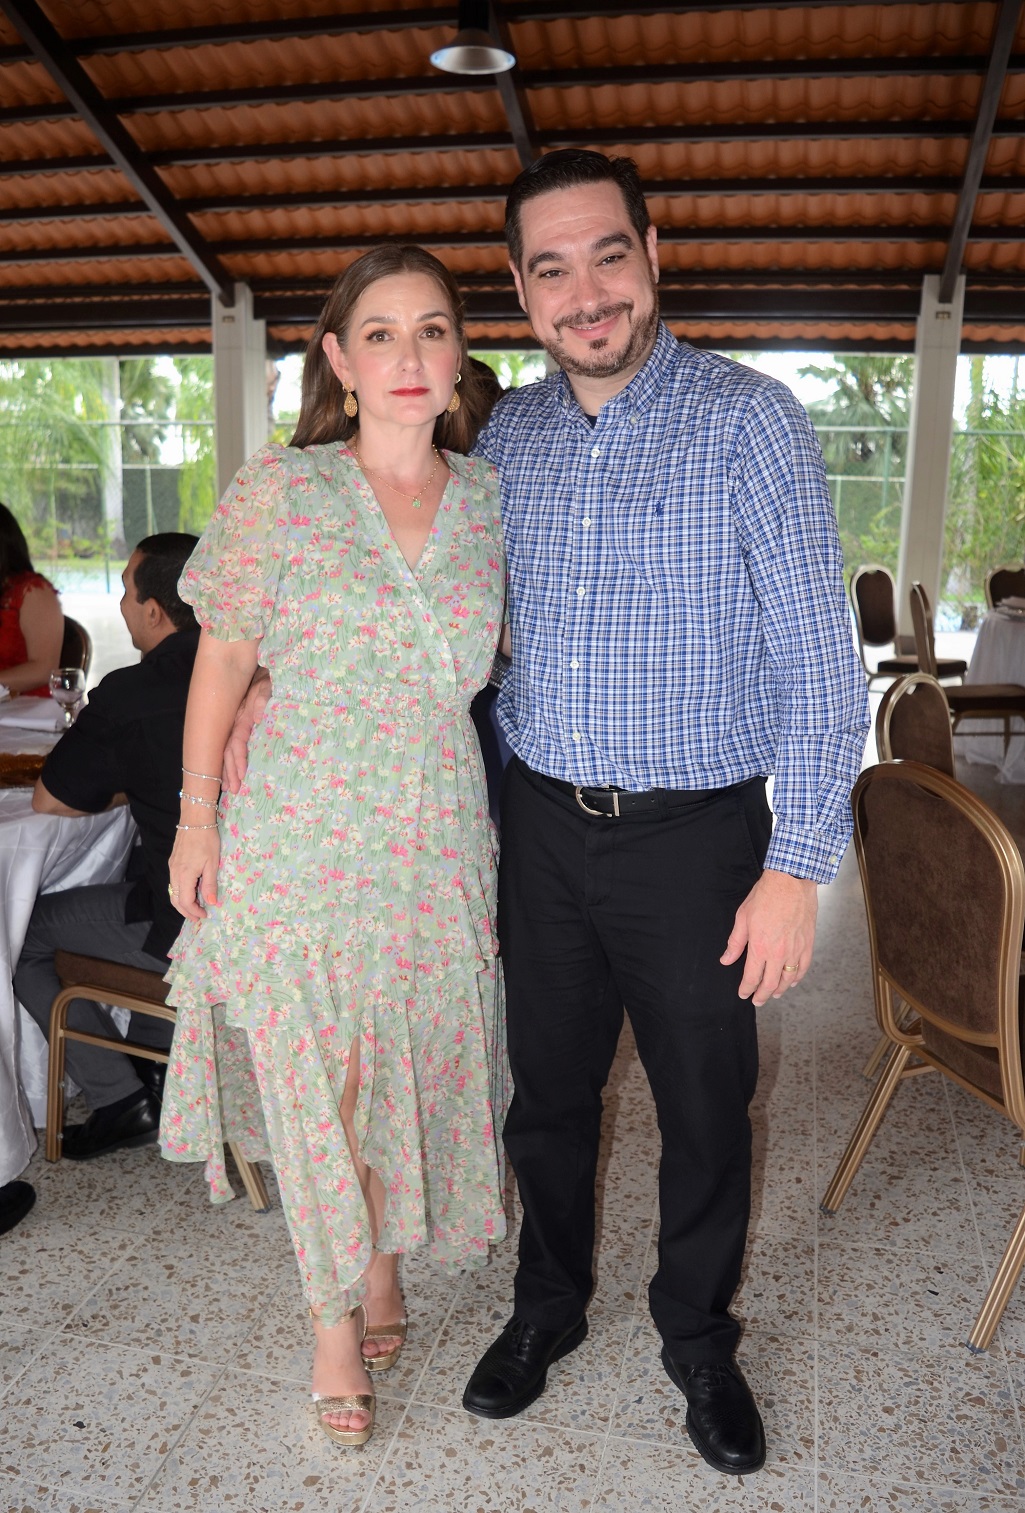 La boda civil de Carlos Elbascha y Delmy Martínez…rodeados de la intimidad familiar